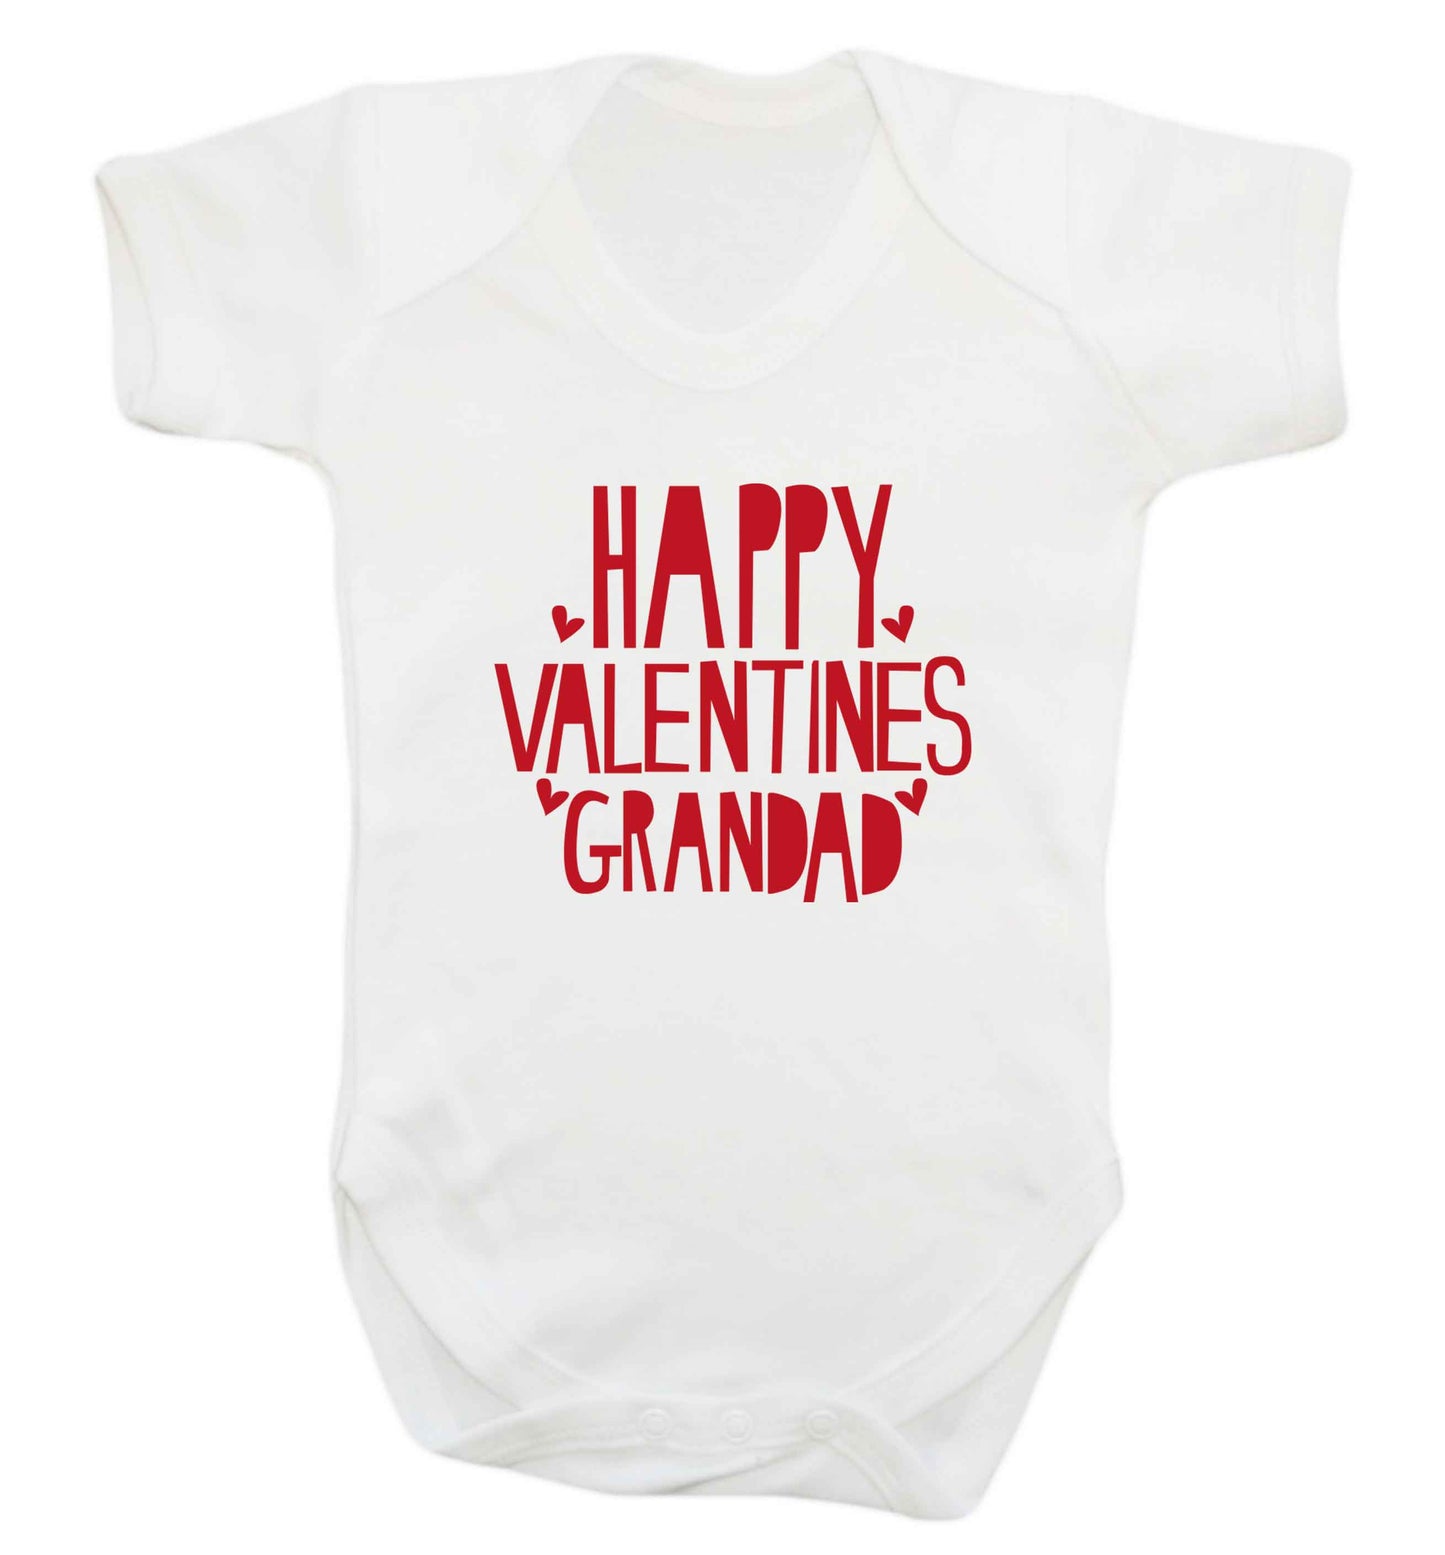 Happy valentines grandad baby vest white 18-24 months